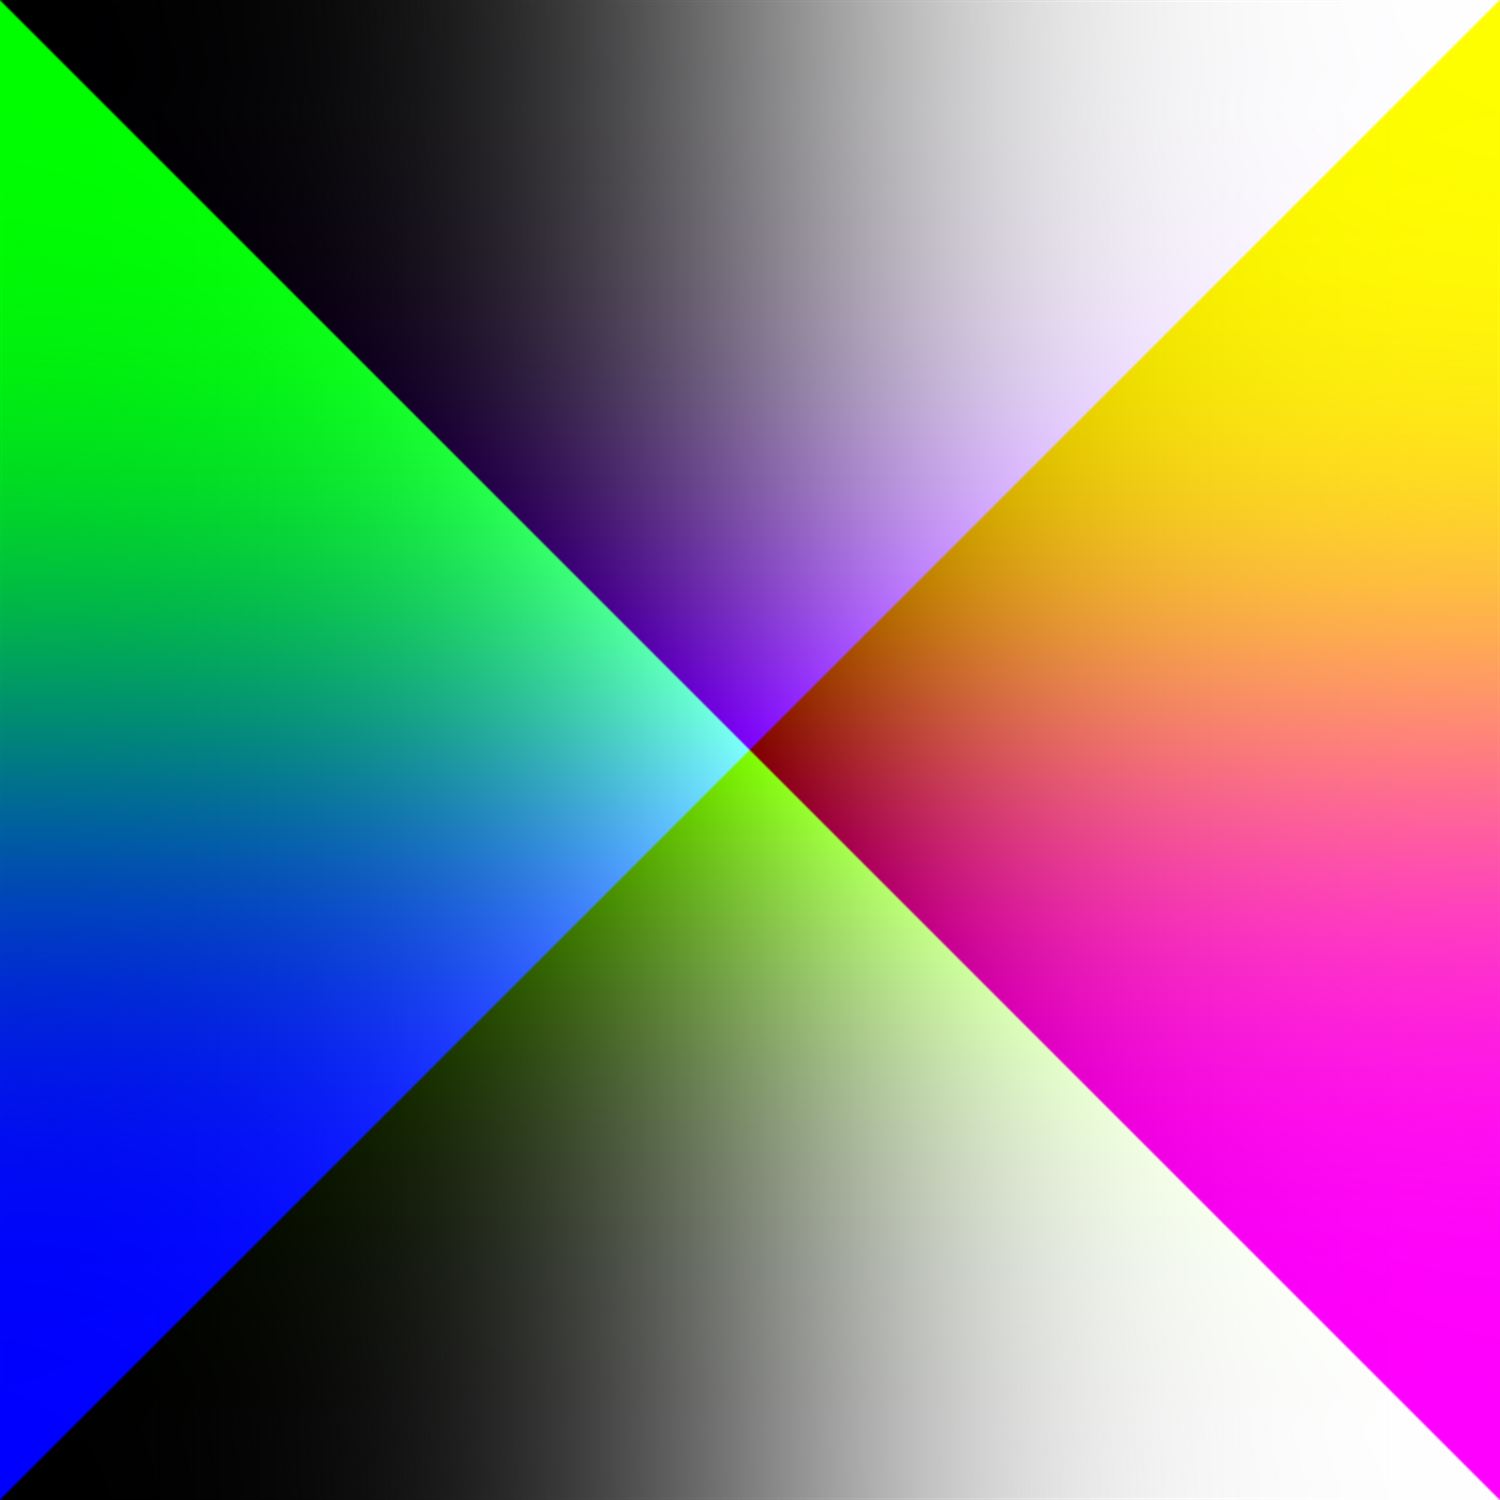 Optimisation Problem: colour vs form